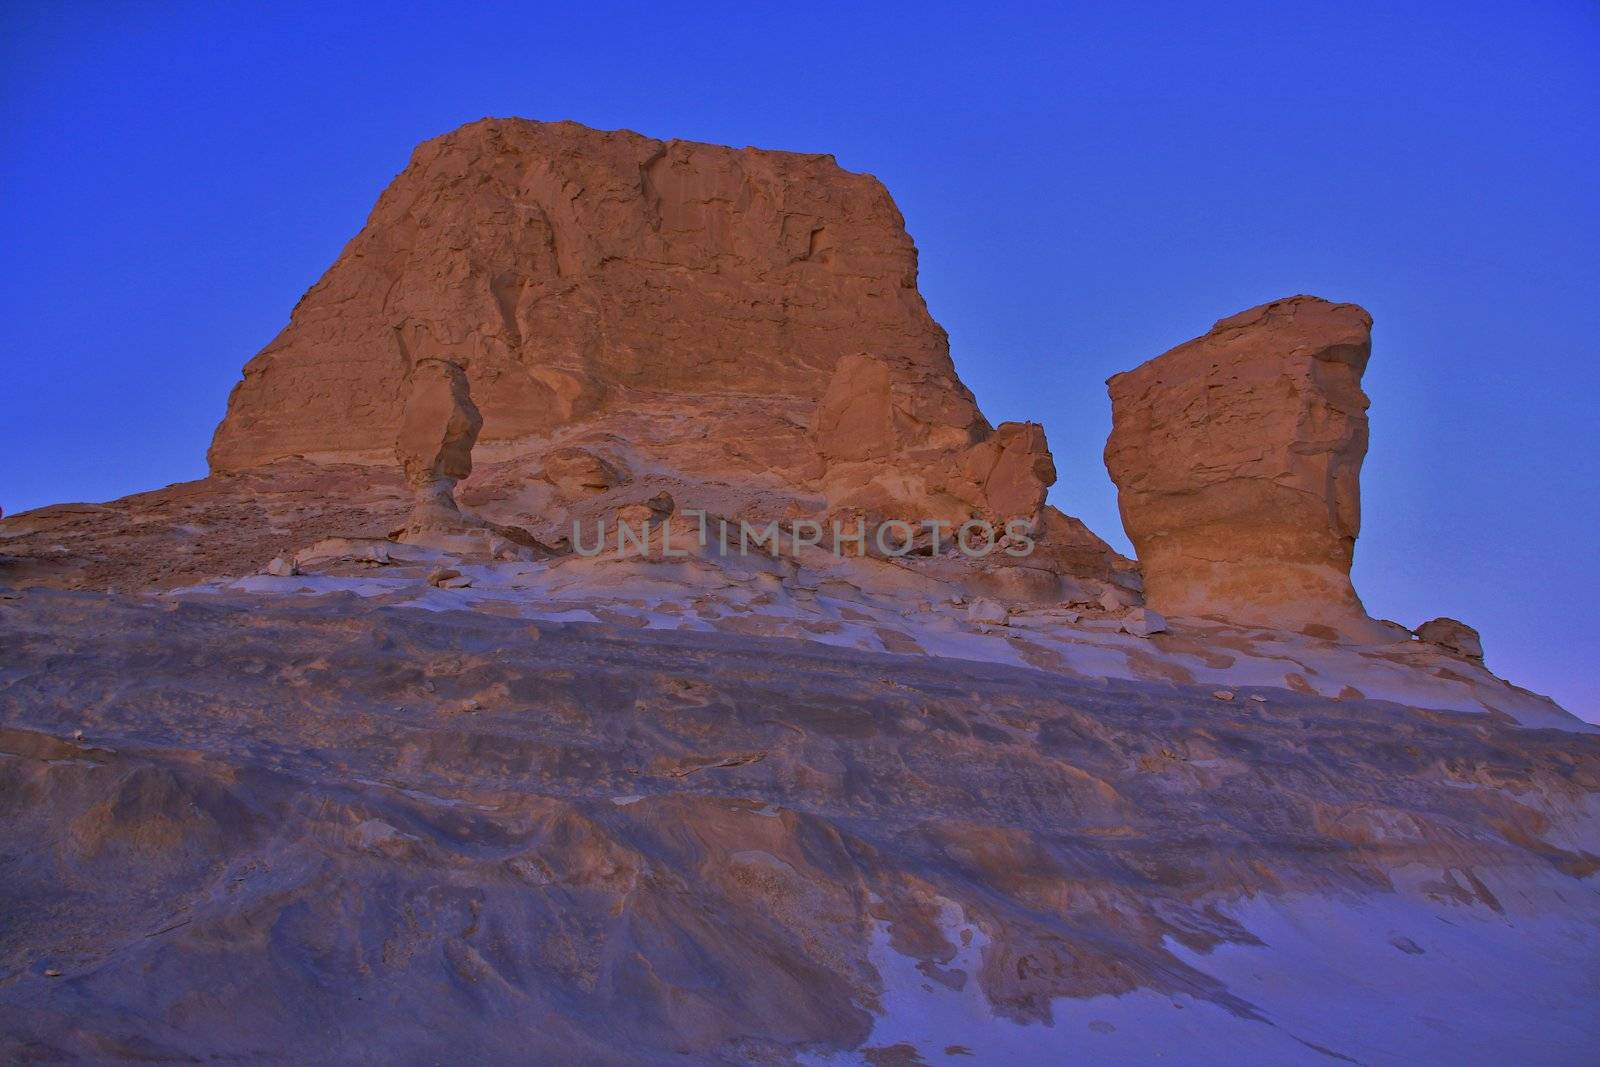 Sunset in White Desert, Egypt  by jnerad